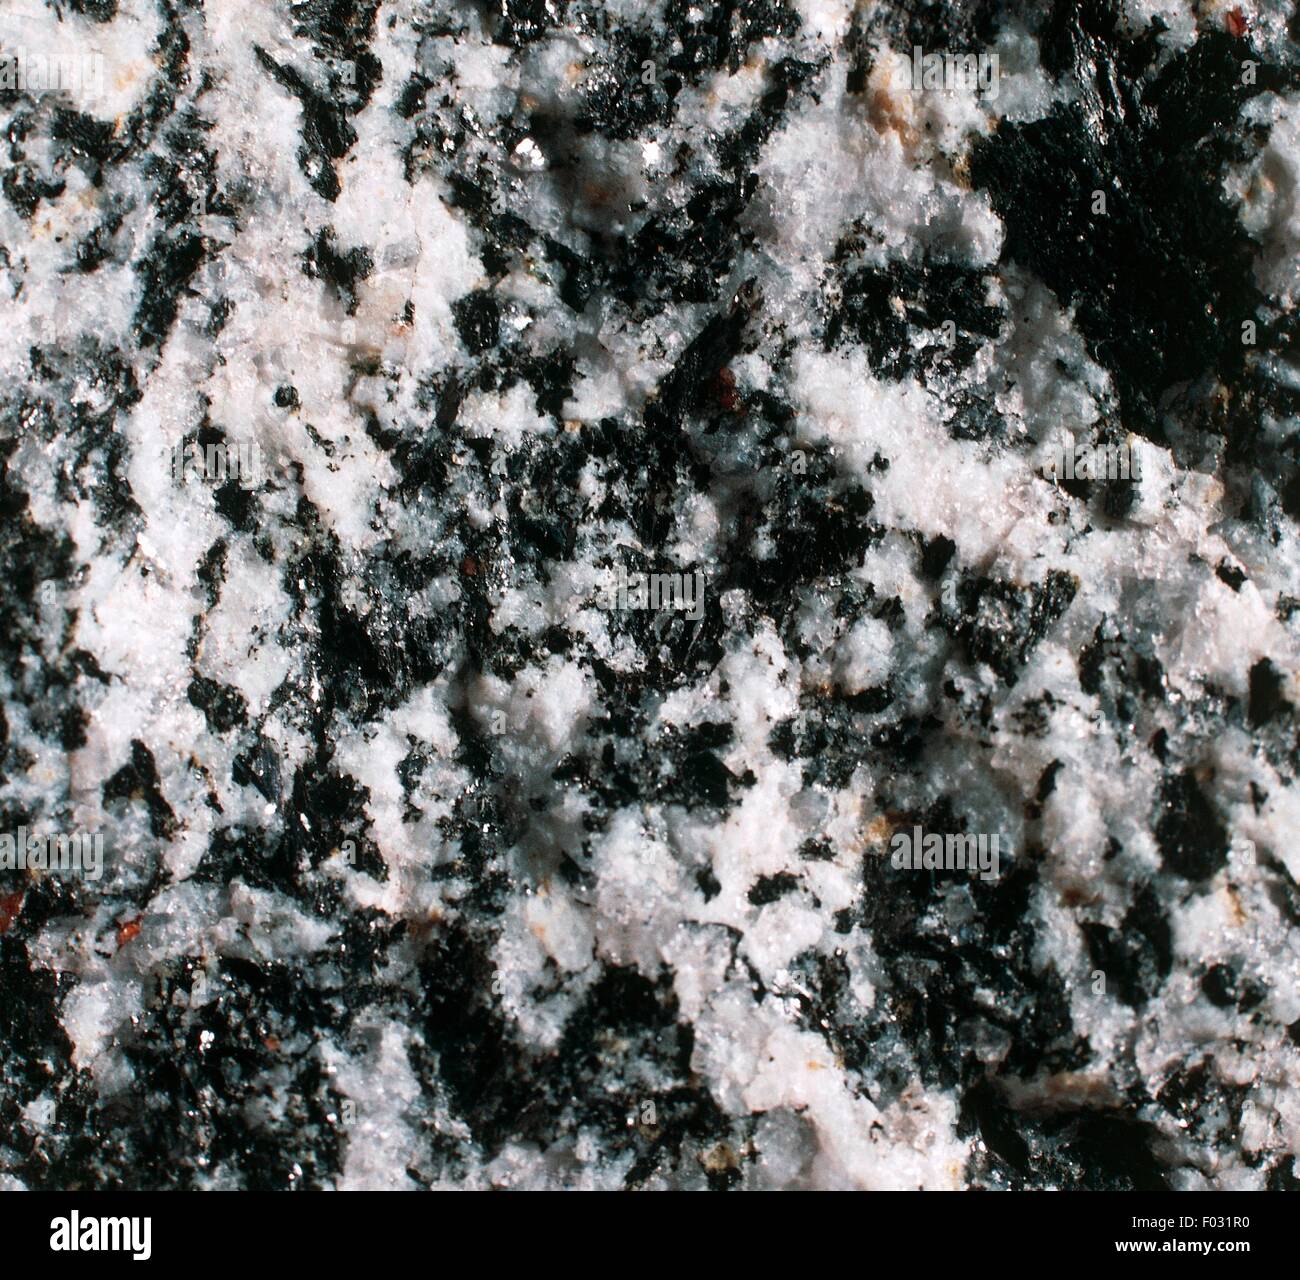 Tonalite, holocrystalline magmatic rock, from Sondrio, Lombardy, Italy. Stock Photo